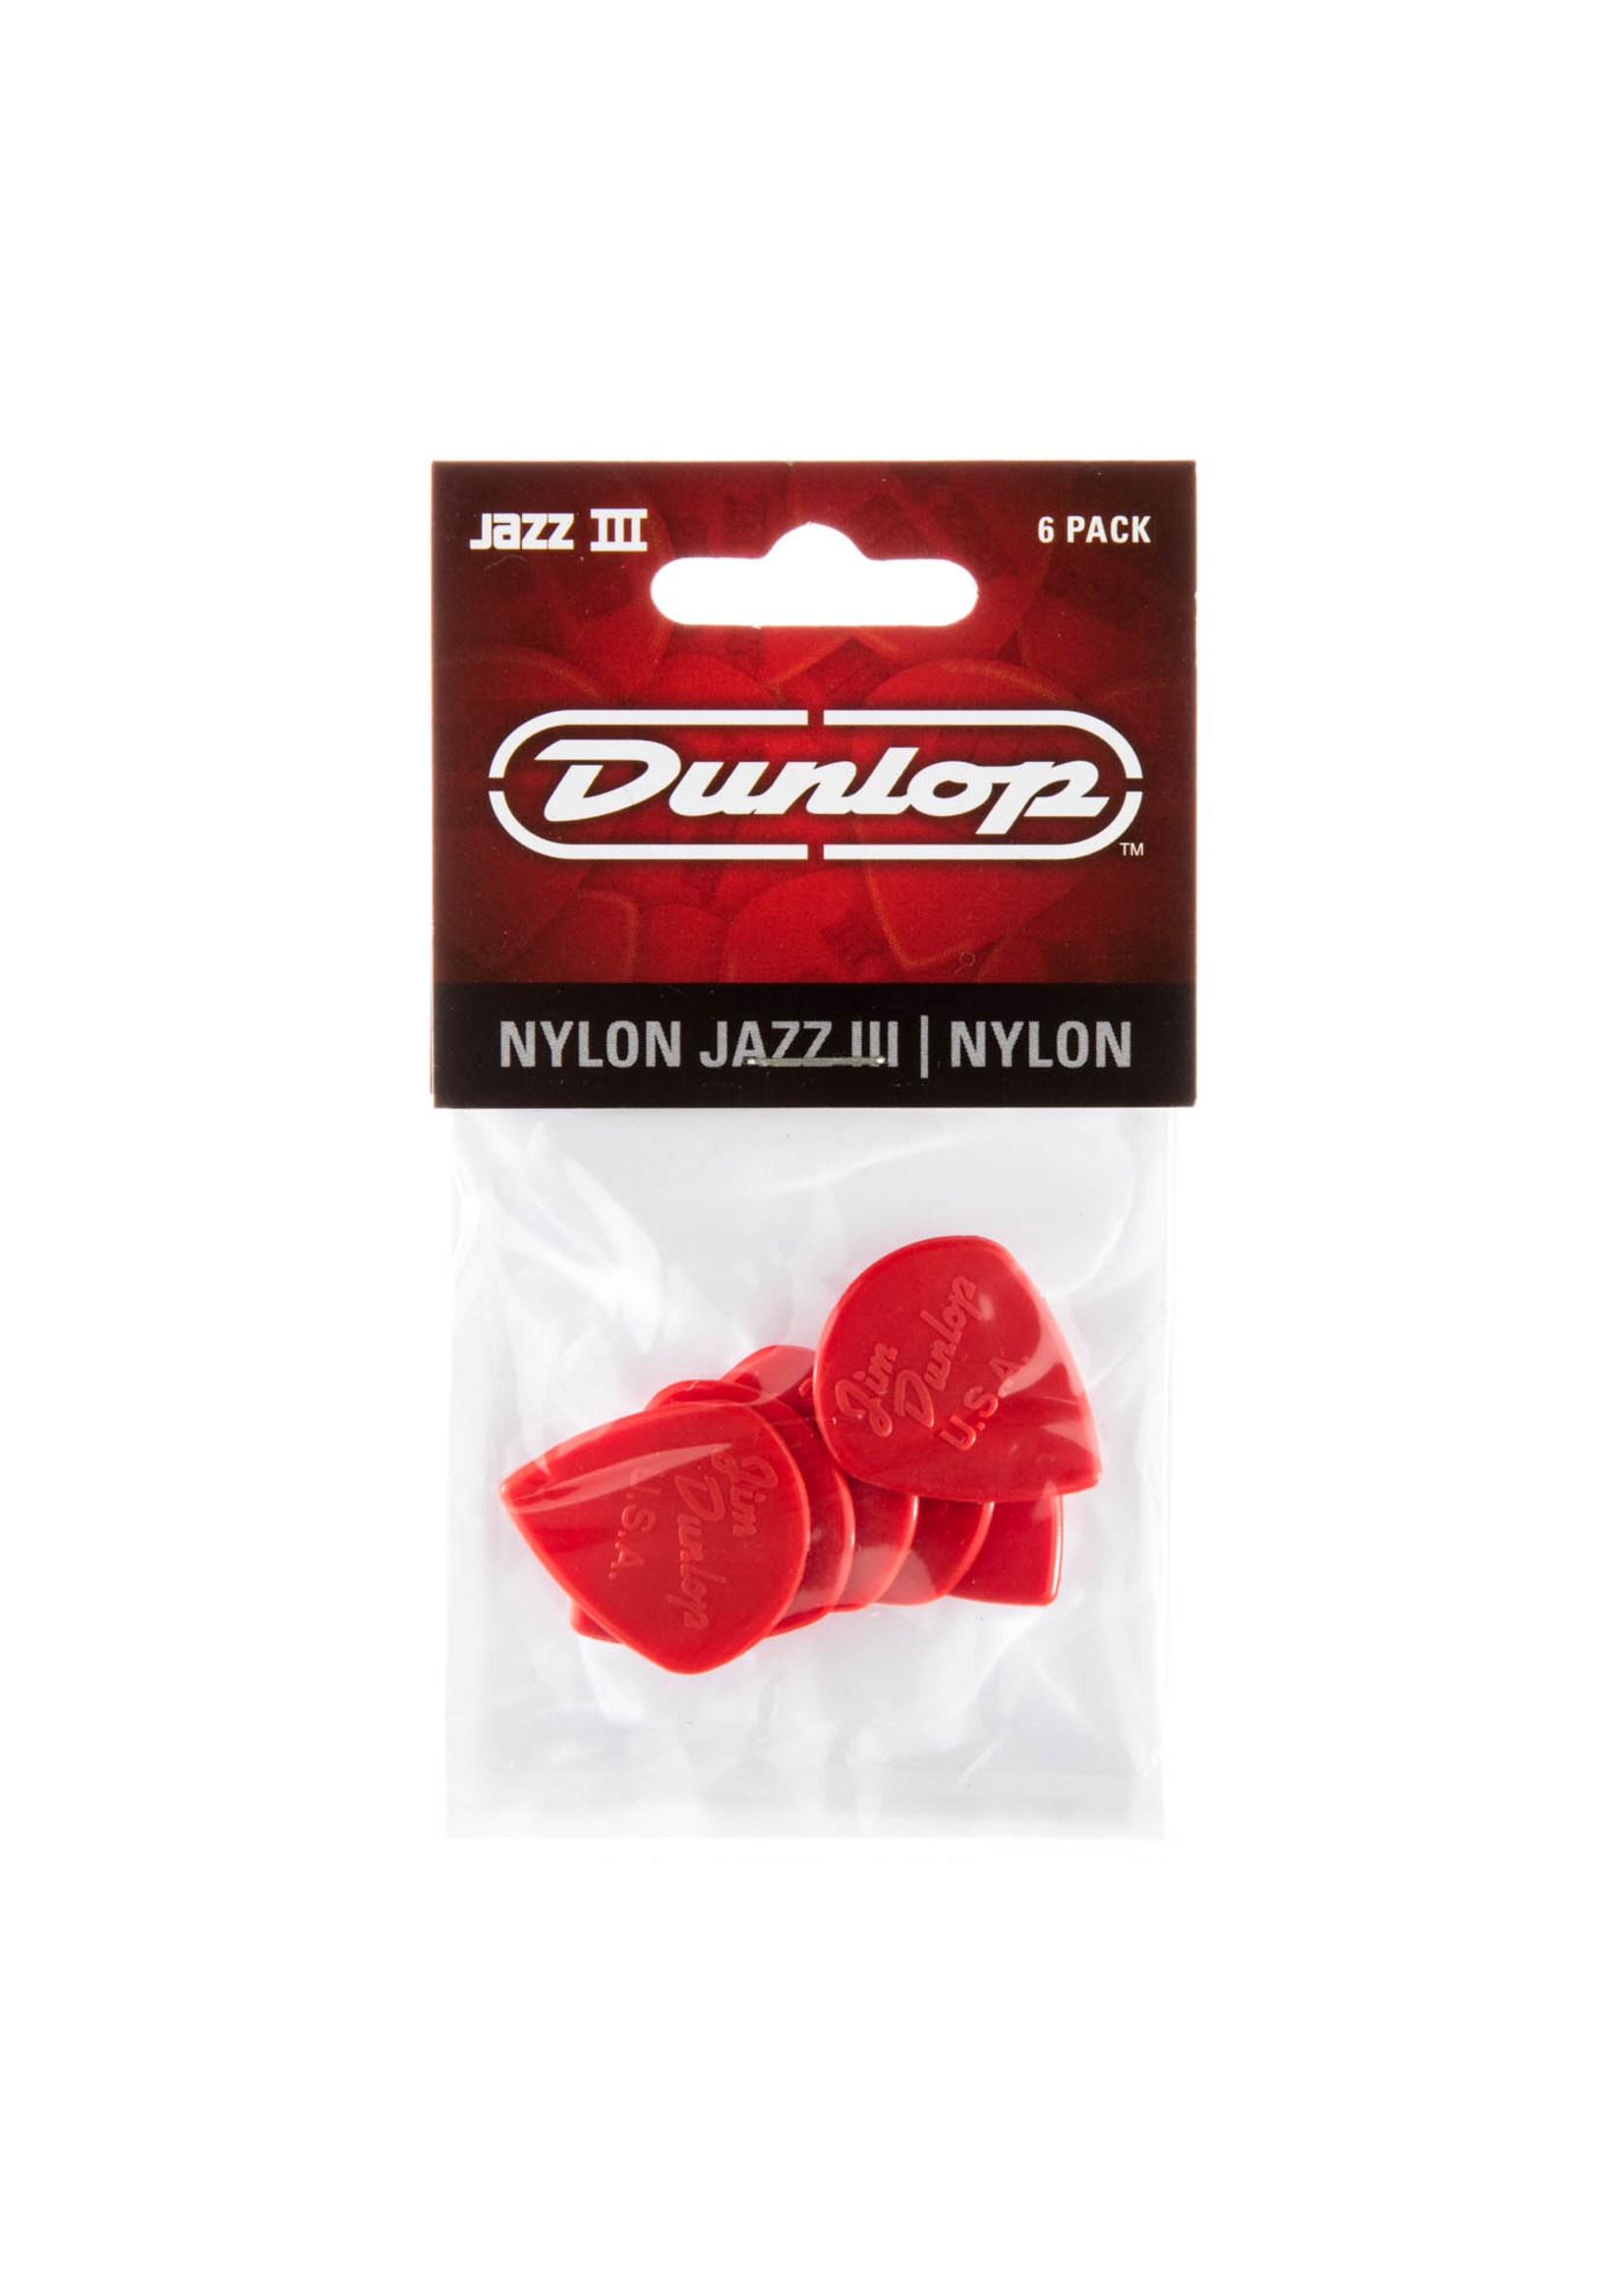 Dunlop Dunlop PickPack Jazz 3 6-Pack